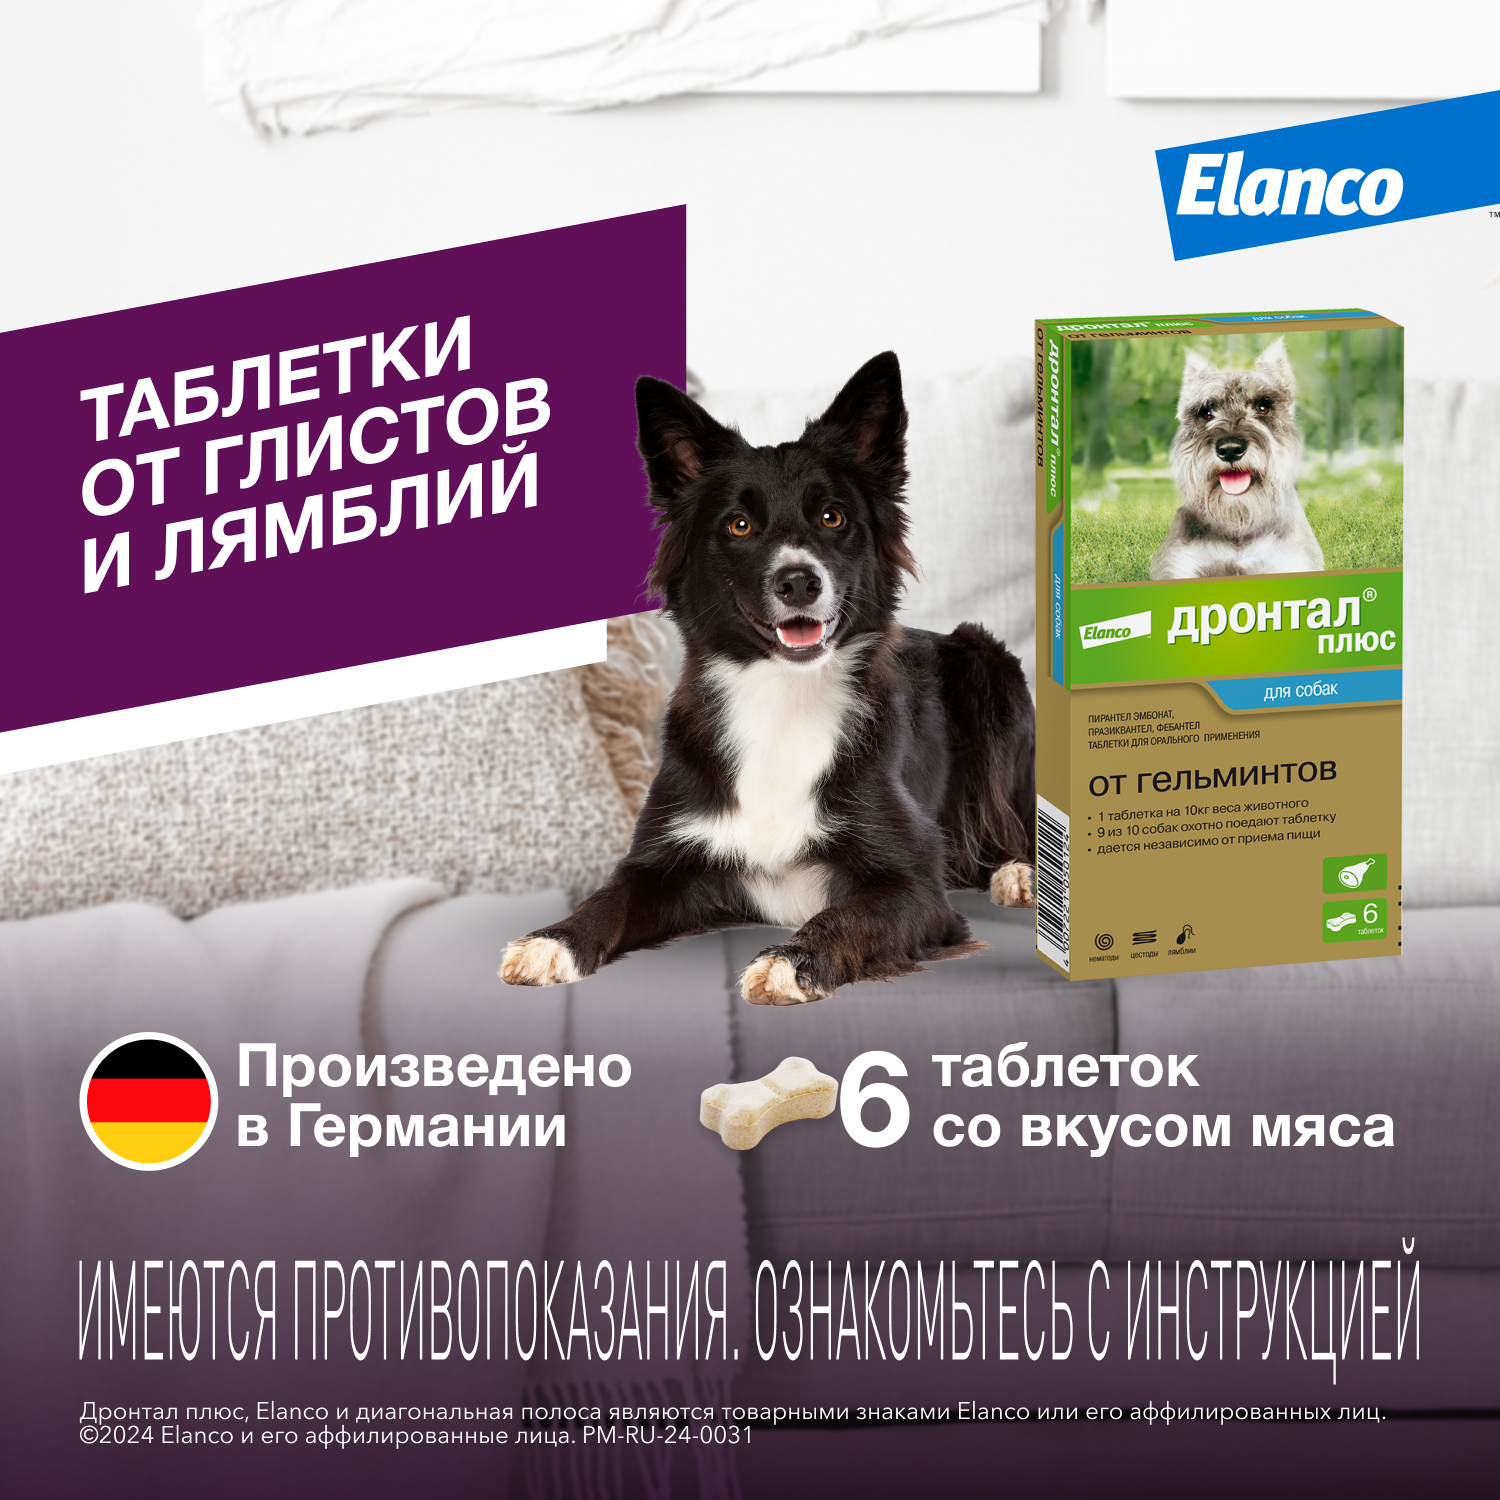 Антигельминтик для собак Elanco Дронтал плюс 6таблеток - фото 2